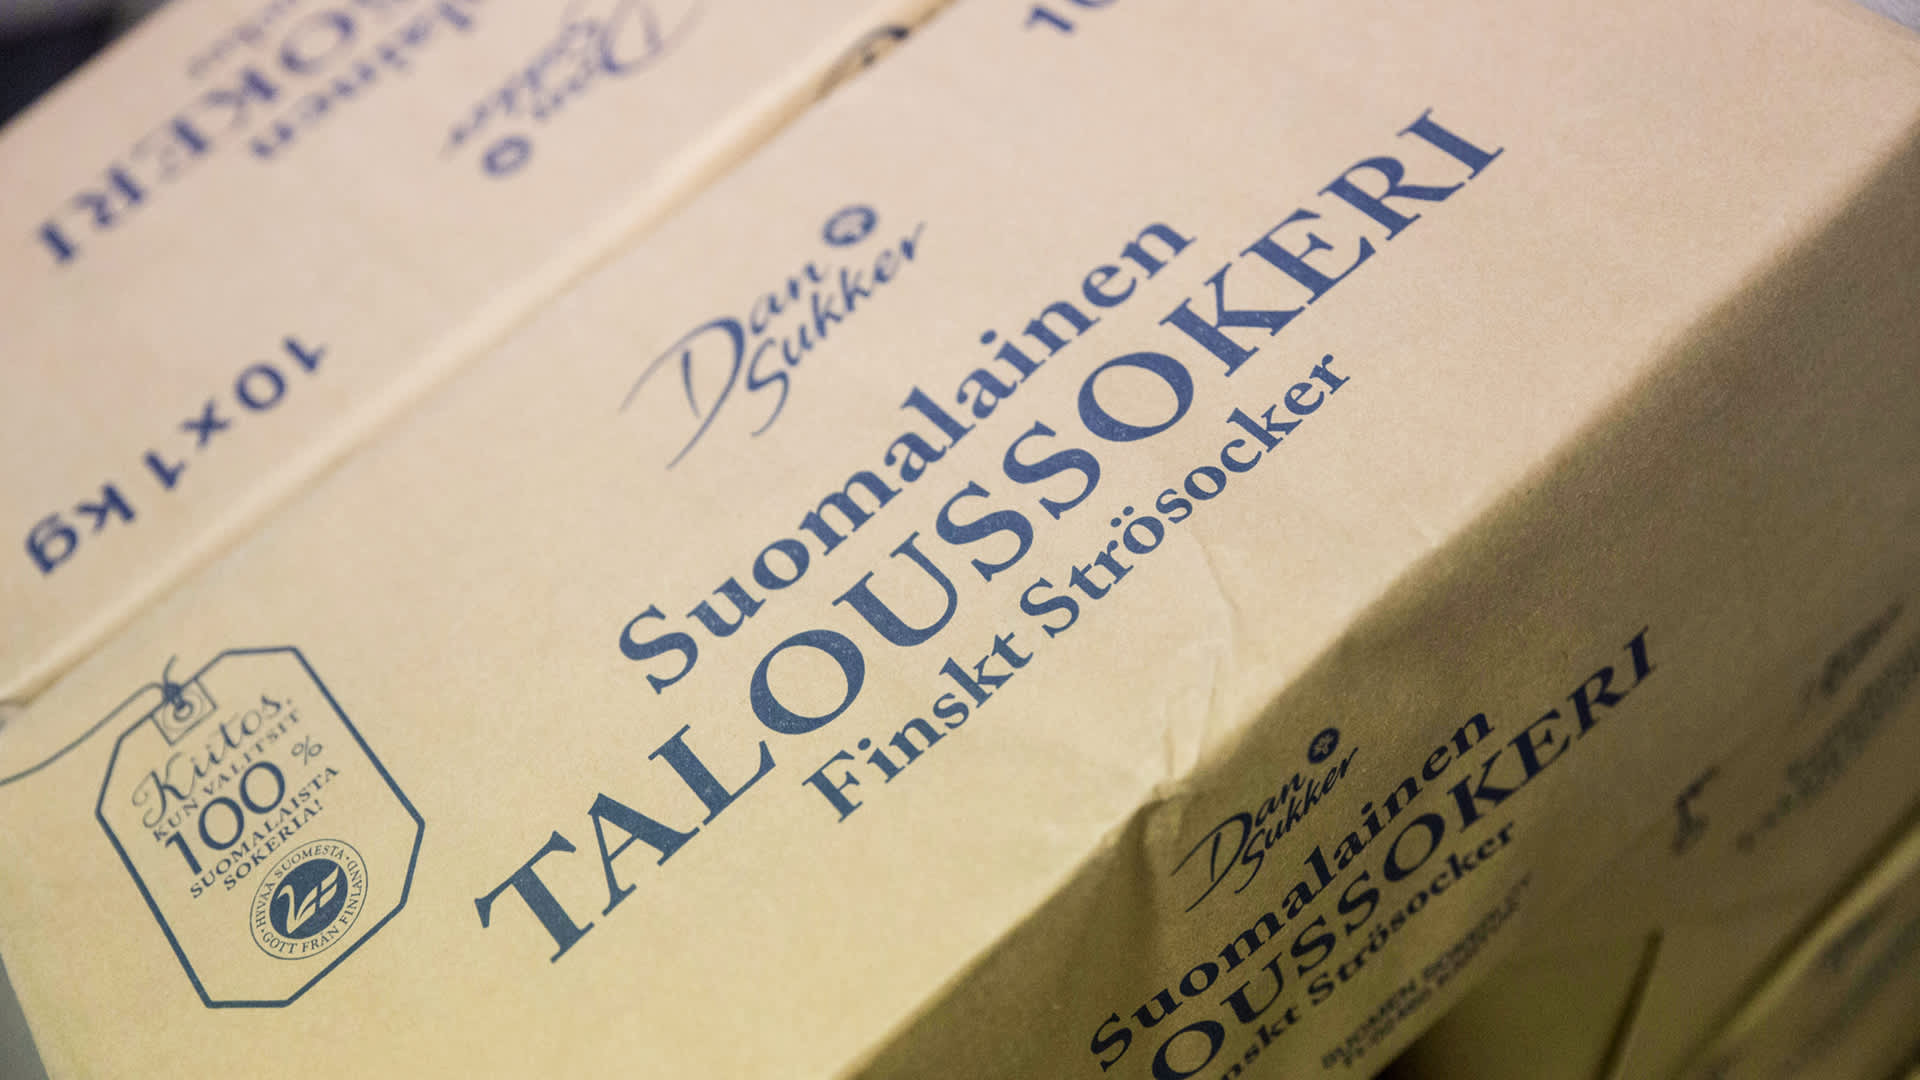 Suomalainen taloussokeri -pakkaus lähikuvassa.